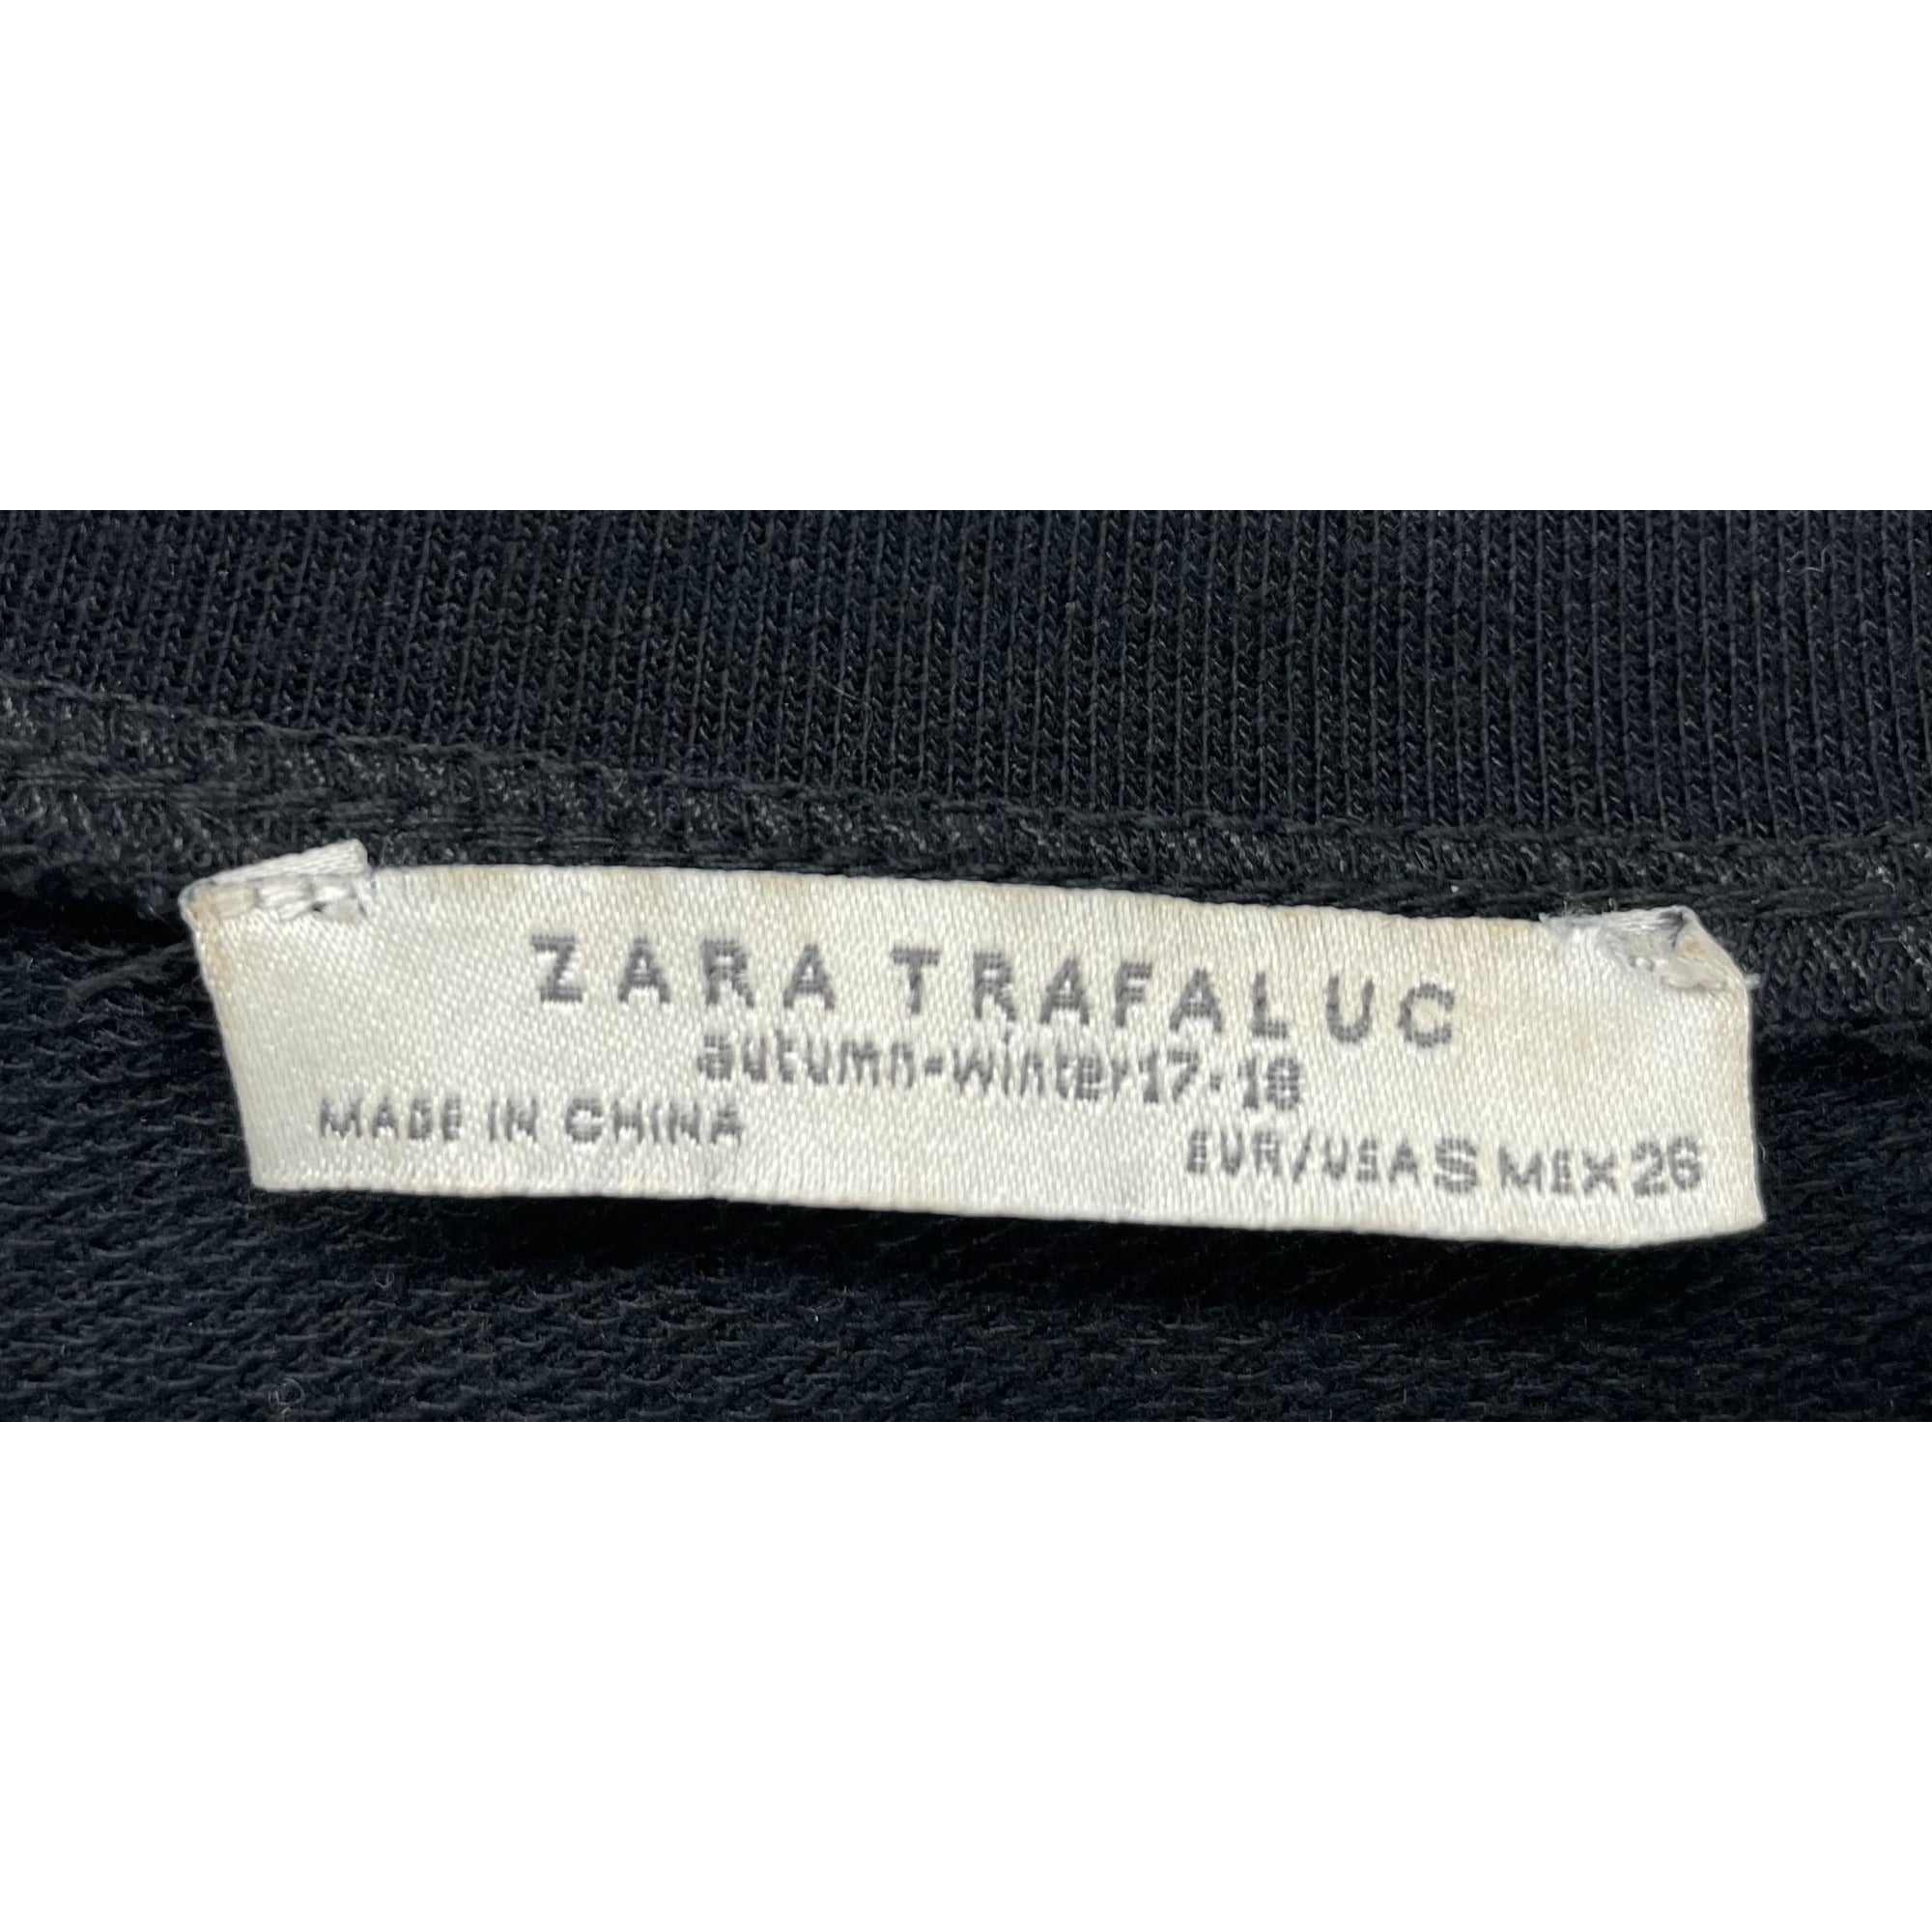 Zara Women’s Small Black Women’s Faux Fur & Pearl Shoulder Long-Sleeved Top